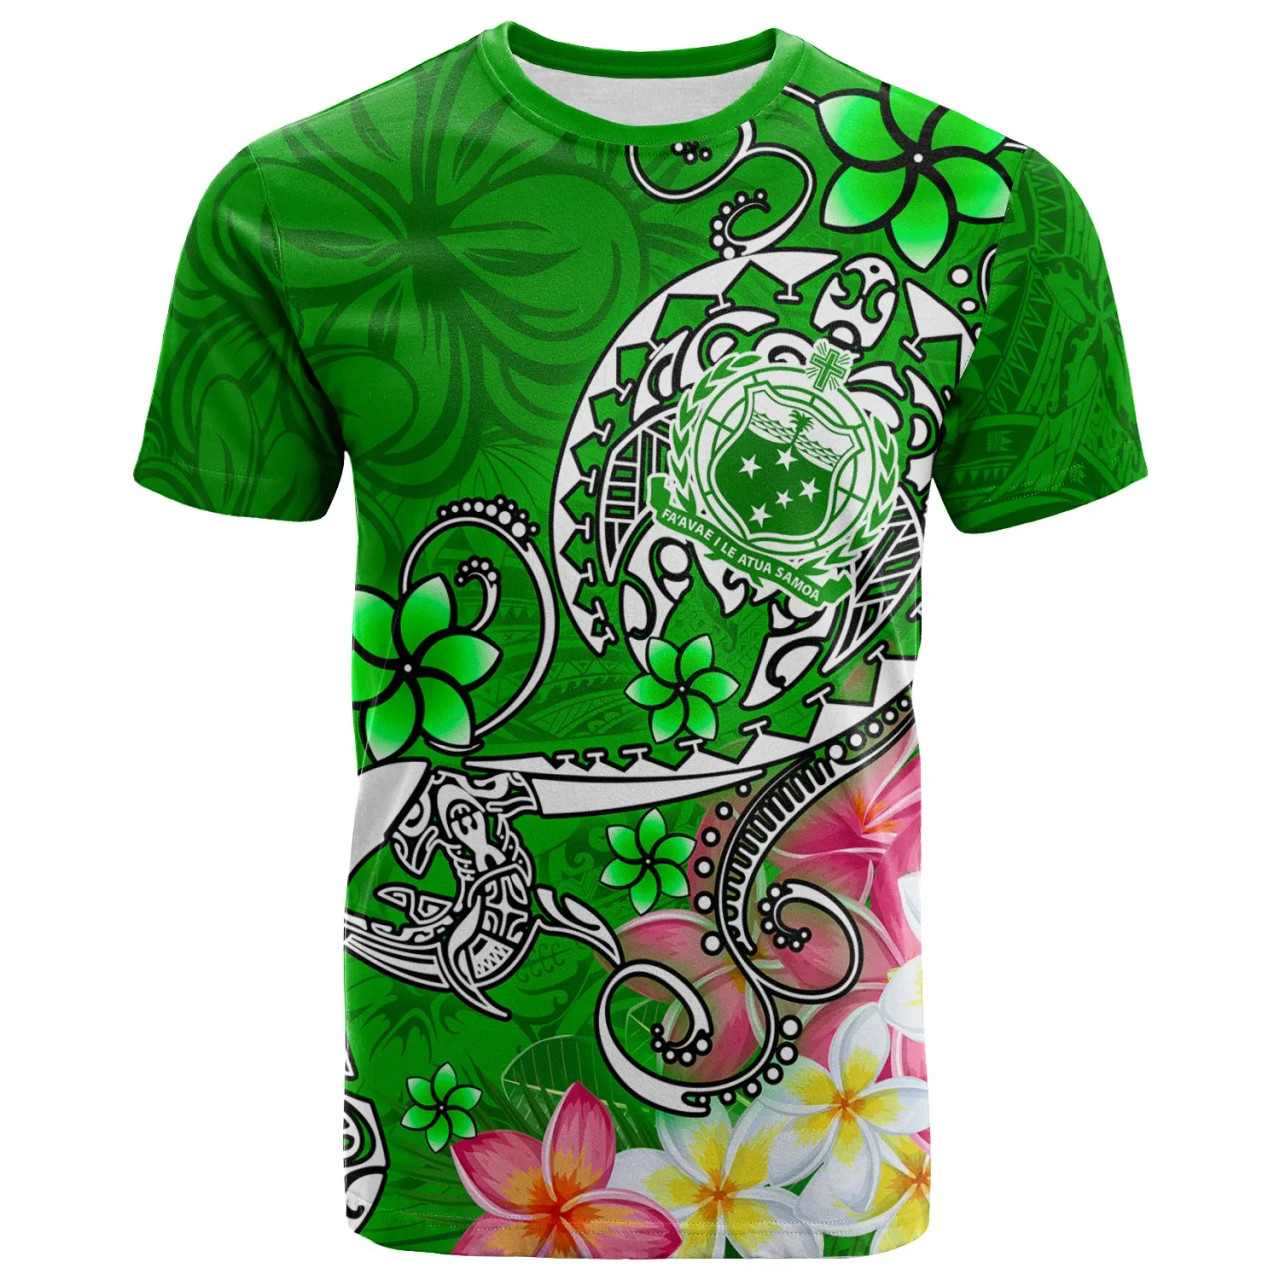 Samoa T-Shirts - Turtle Plumeria (Green) 1